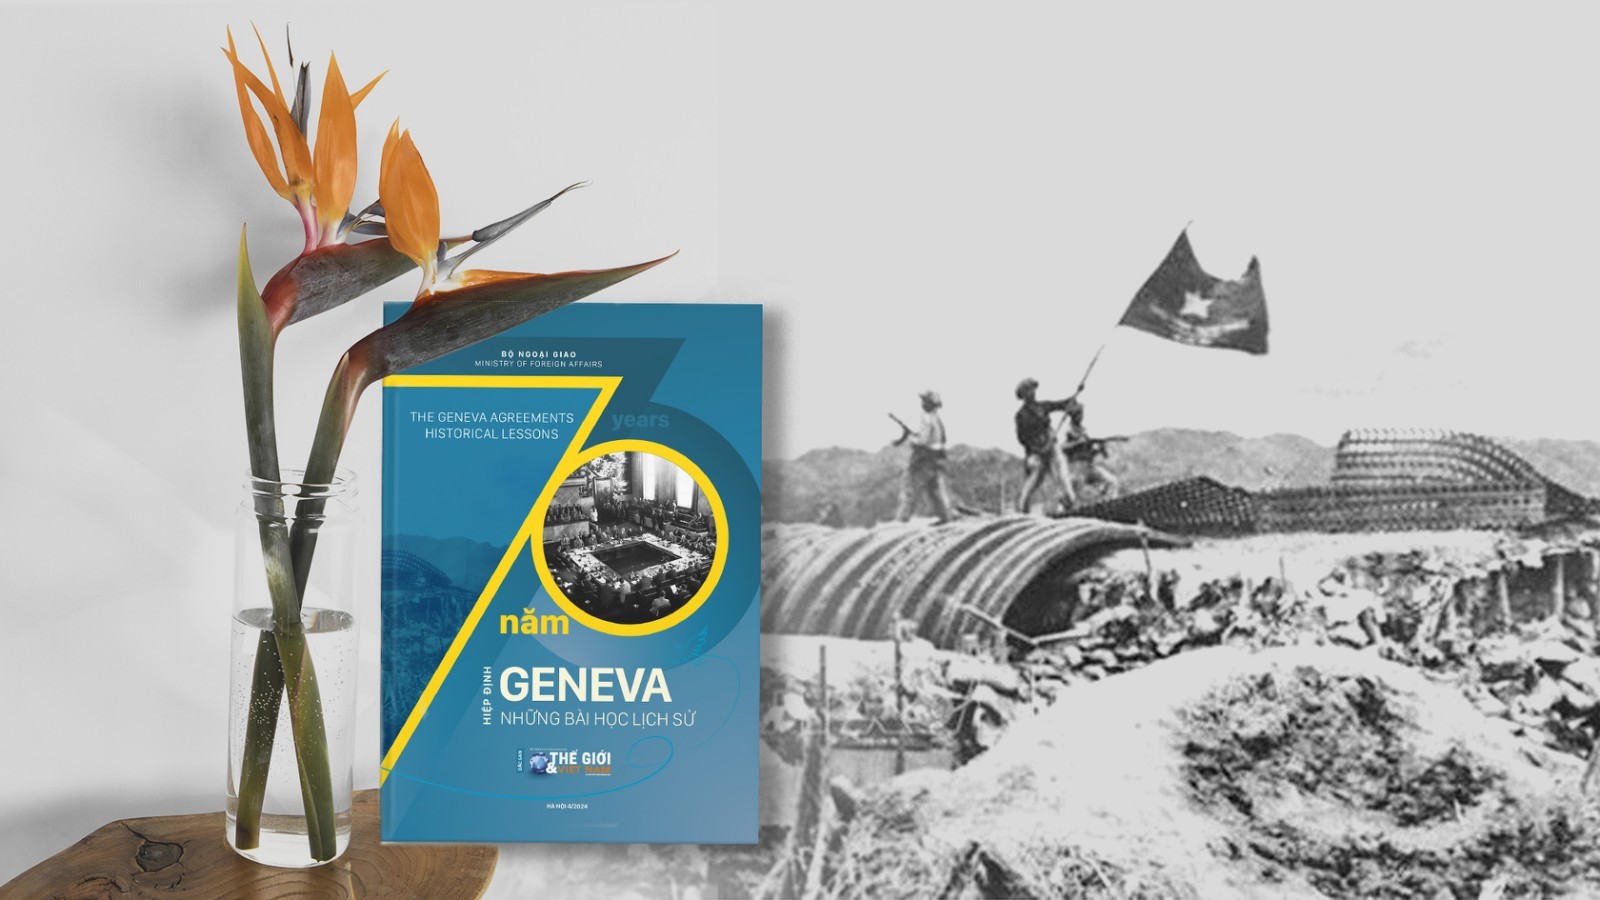 Lễ kỷ niệm 70 năm ngày ký Hiệp định Geneva - một mốc son của nền ngoại giao Việt Nam